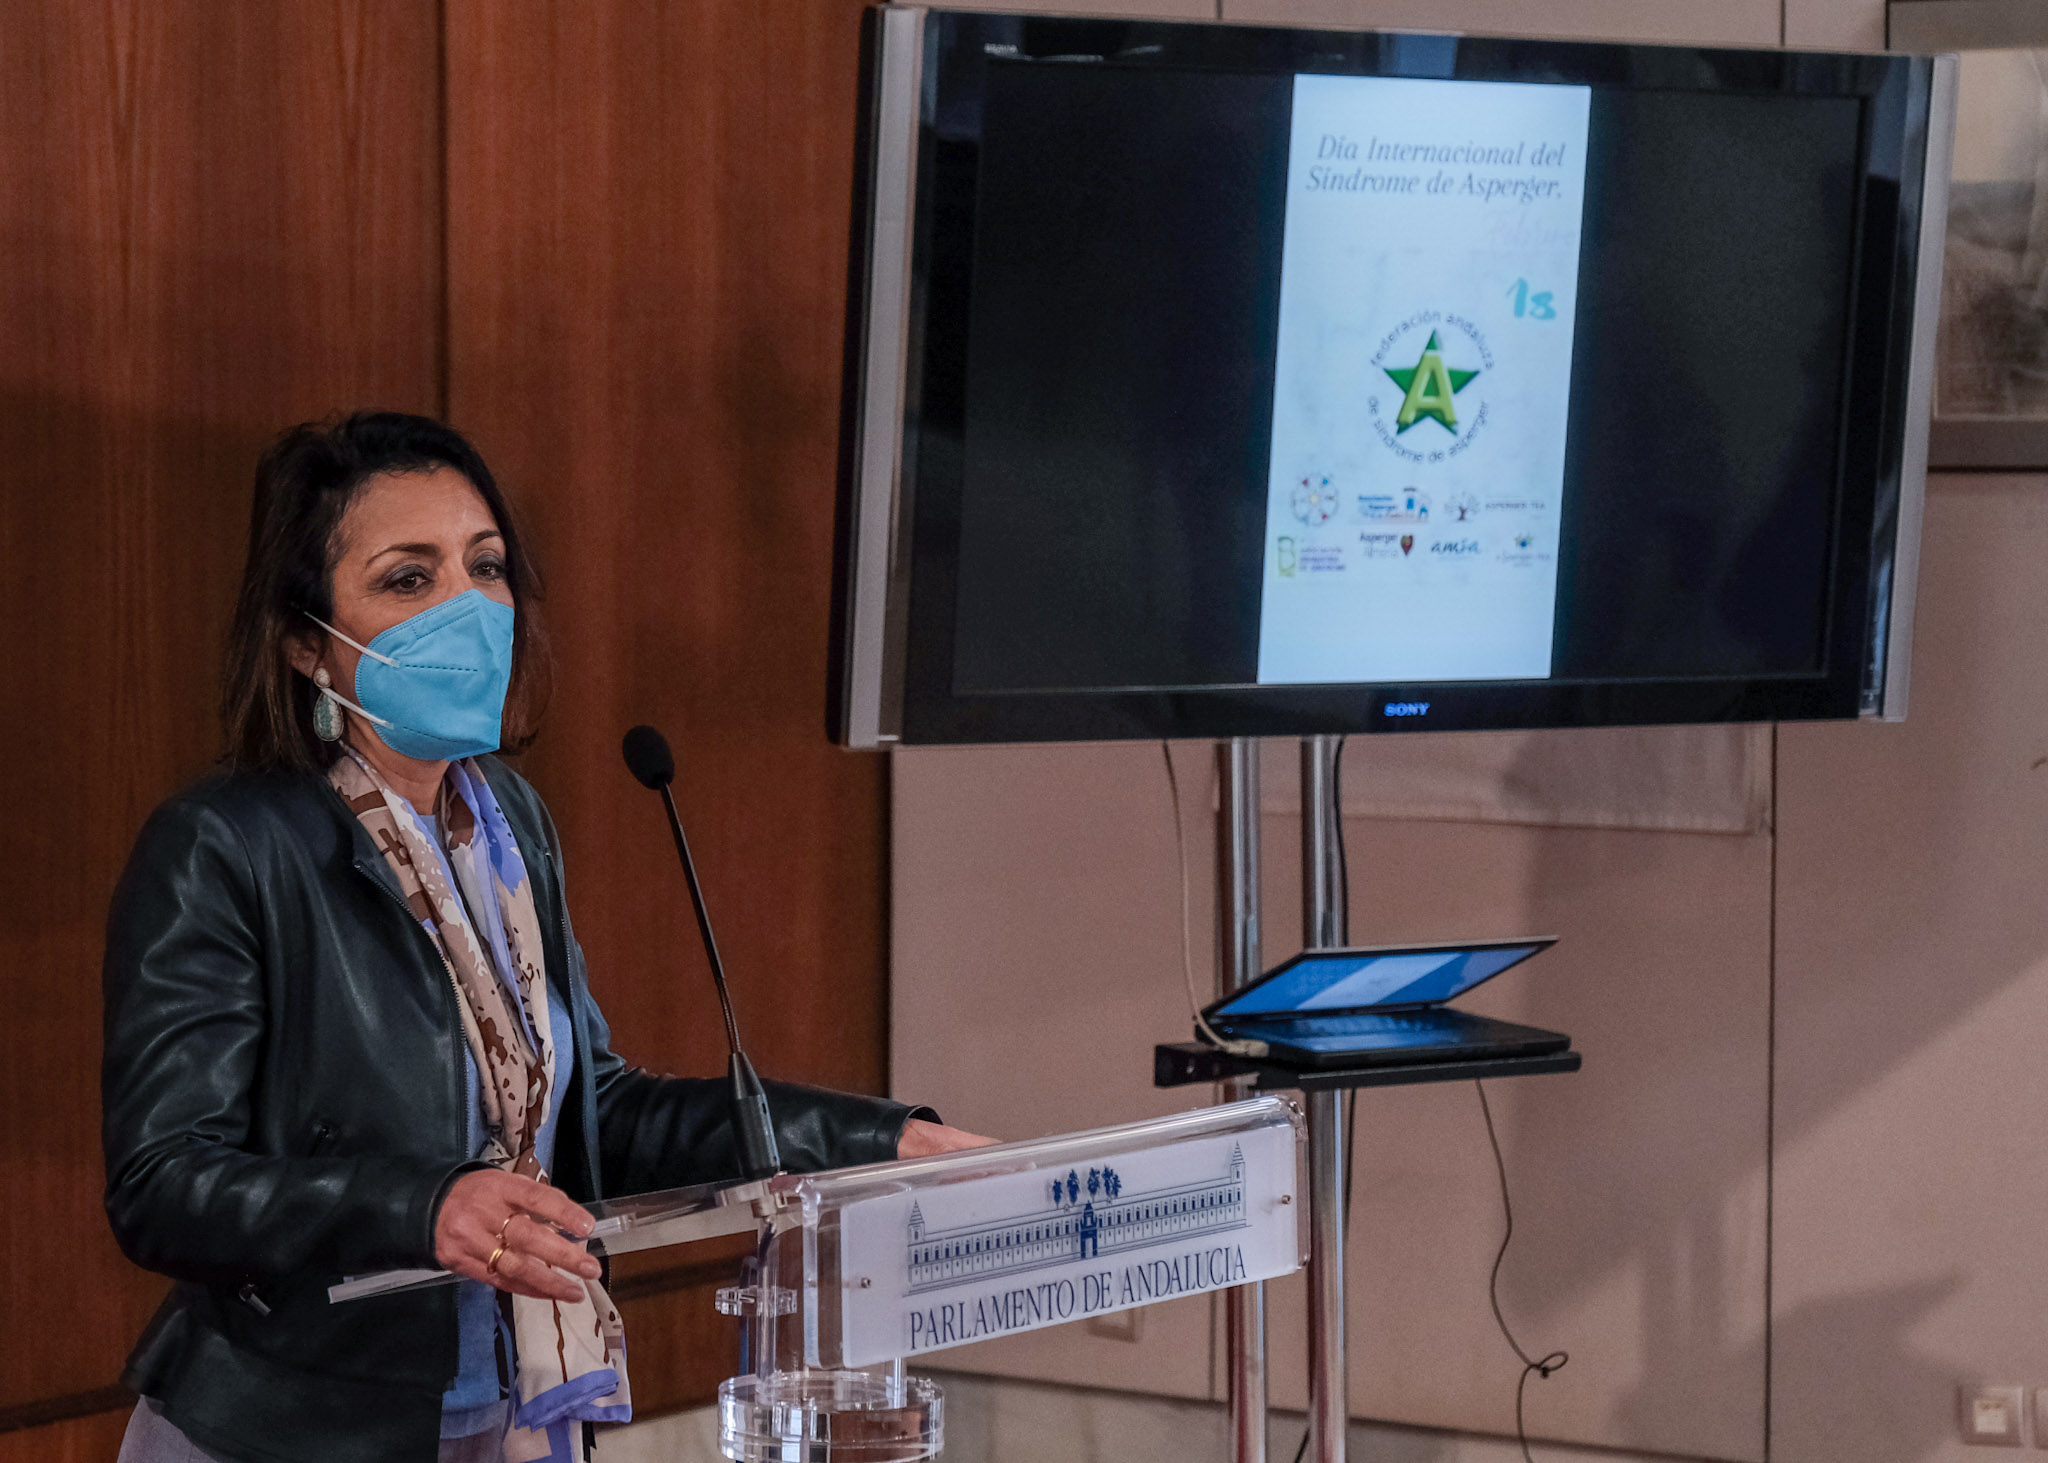 La presidenta del Parlamento, Marta Bosquet, en el acto de lectura del manifiesto por el Da Internacional del Sndrome de Asperger  